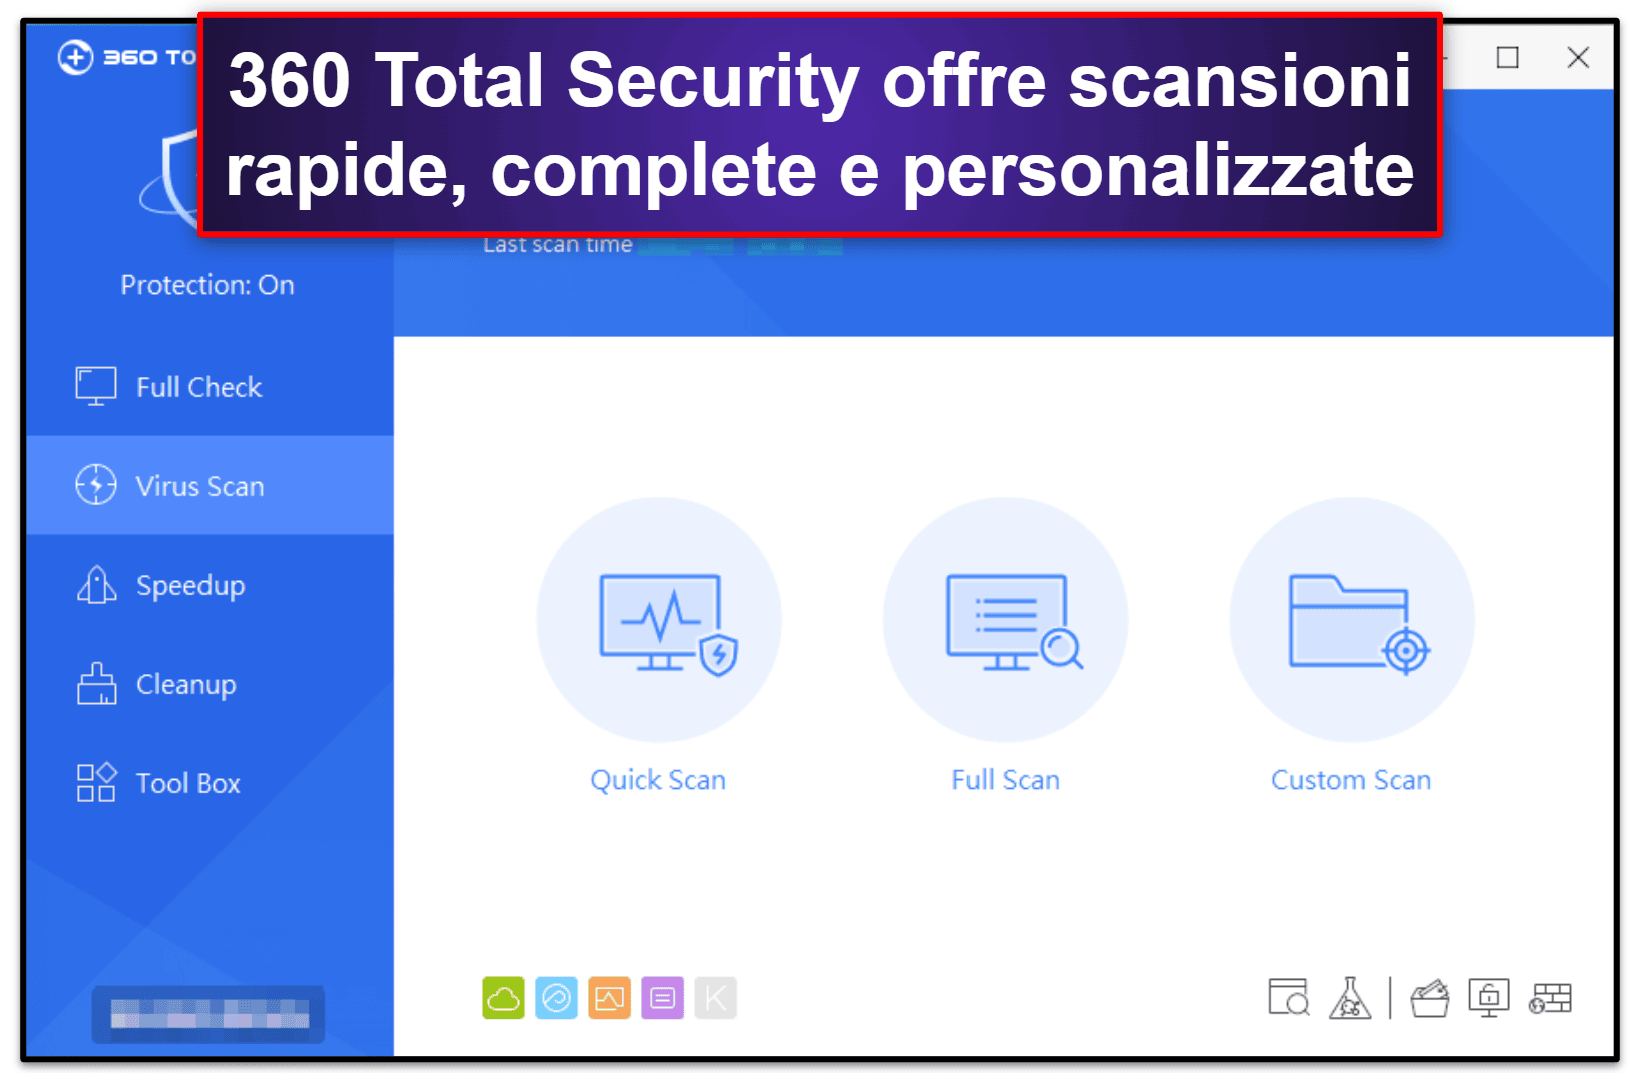 Funzionalità di sicurezza di 360 Total Security